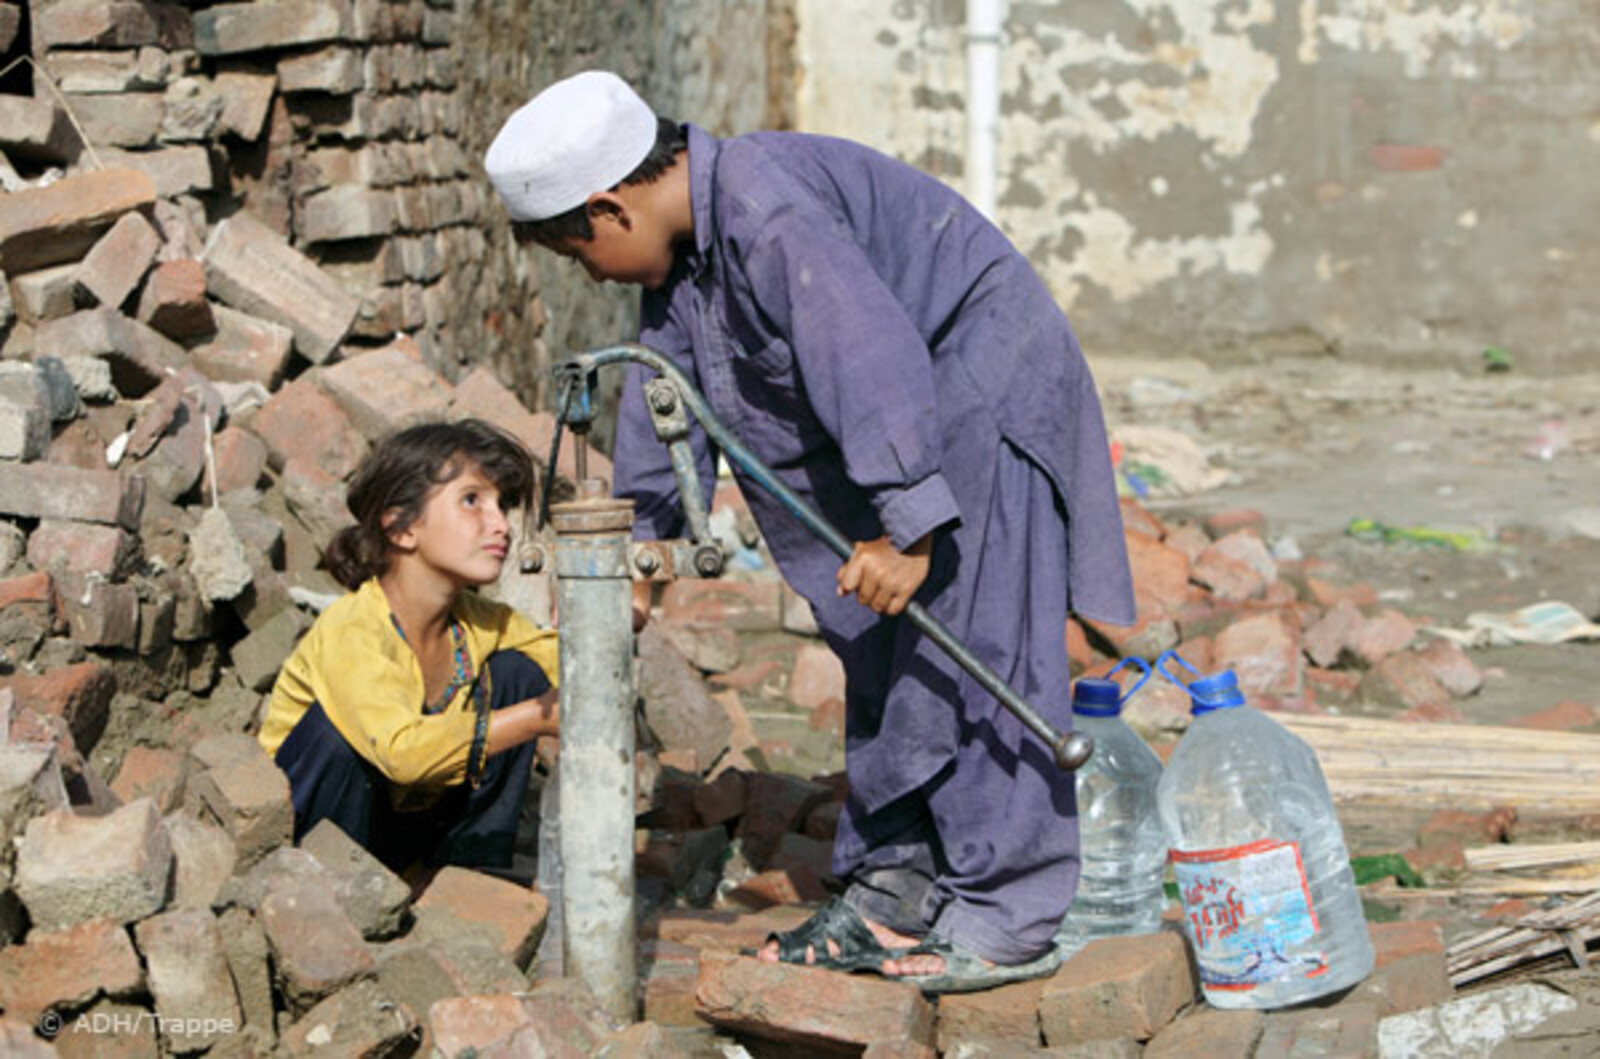 Flut Pakistan: Kinder holen Wasser an alter Handpumpe